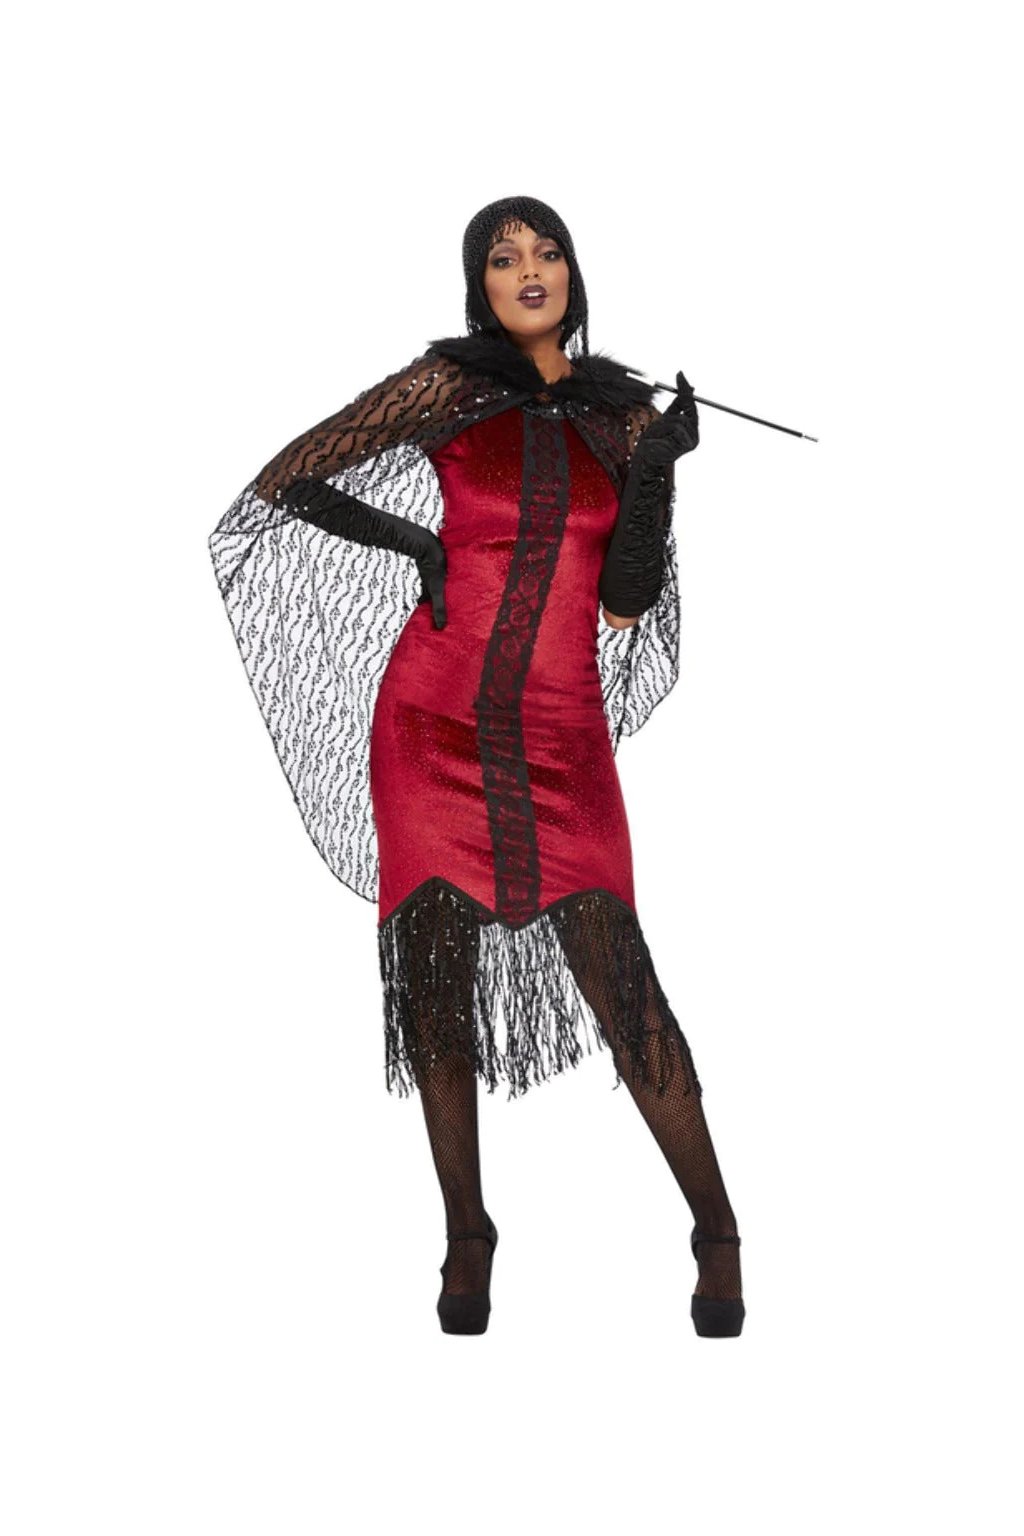 Upírka deluxe - dámský kostým Halloween